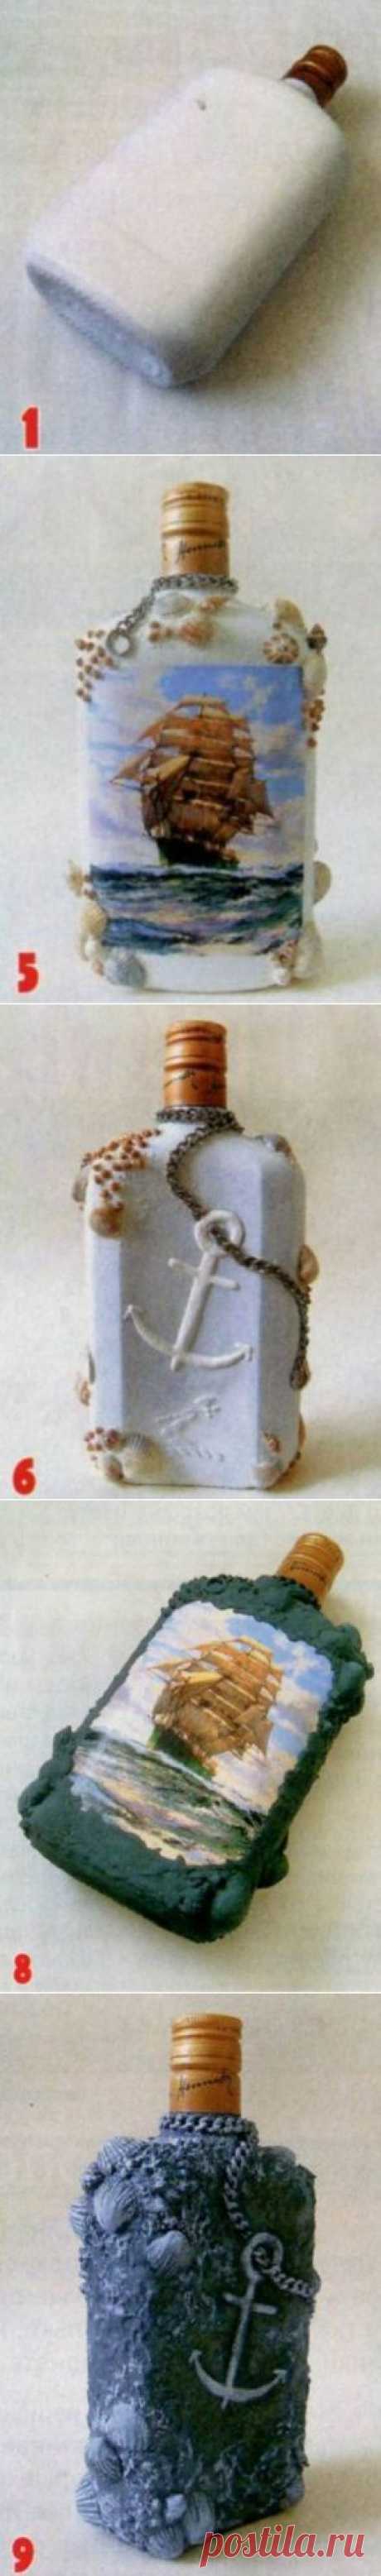 Декупаж бутылки в морском стиле | Мадам Жадина - сайт полезных советов